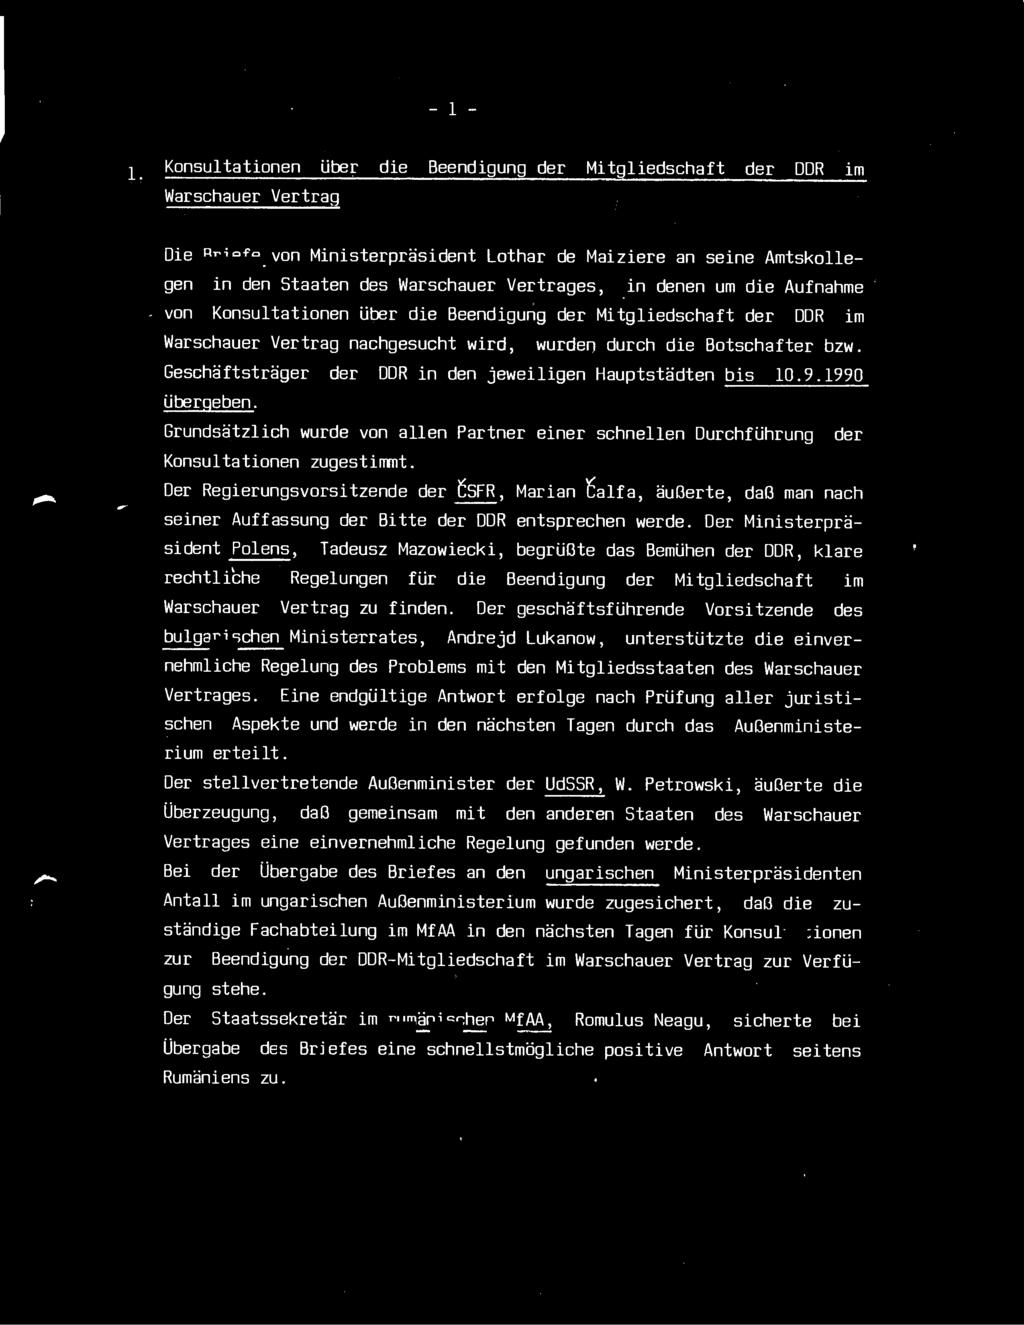 - 1 - L Konsultationen über die Beendigung der Mitgliedschaft der DDR Warschauer Vertrag im - Die Briefe von Ministerpräsident Lothar de Maiziere an seine Amtskollegen in den Staaten des Warschauer